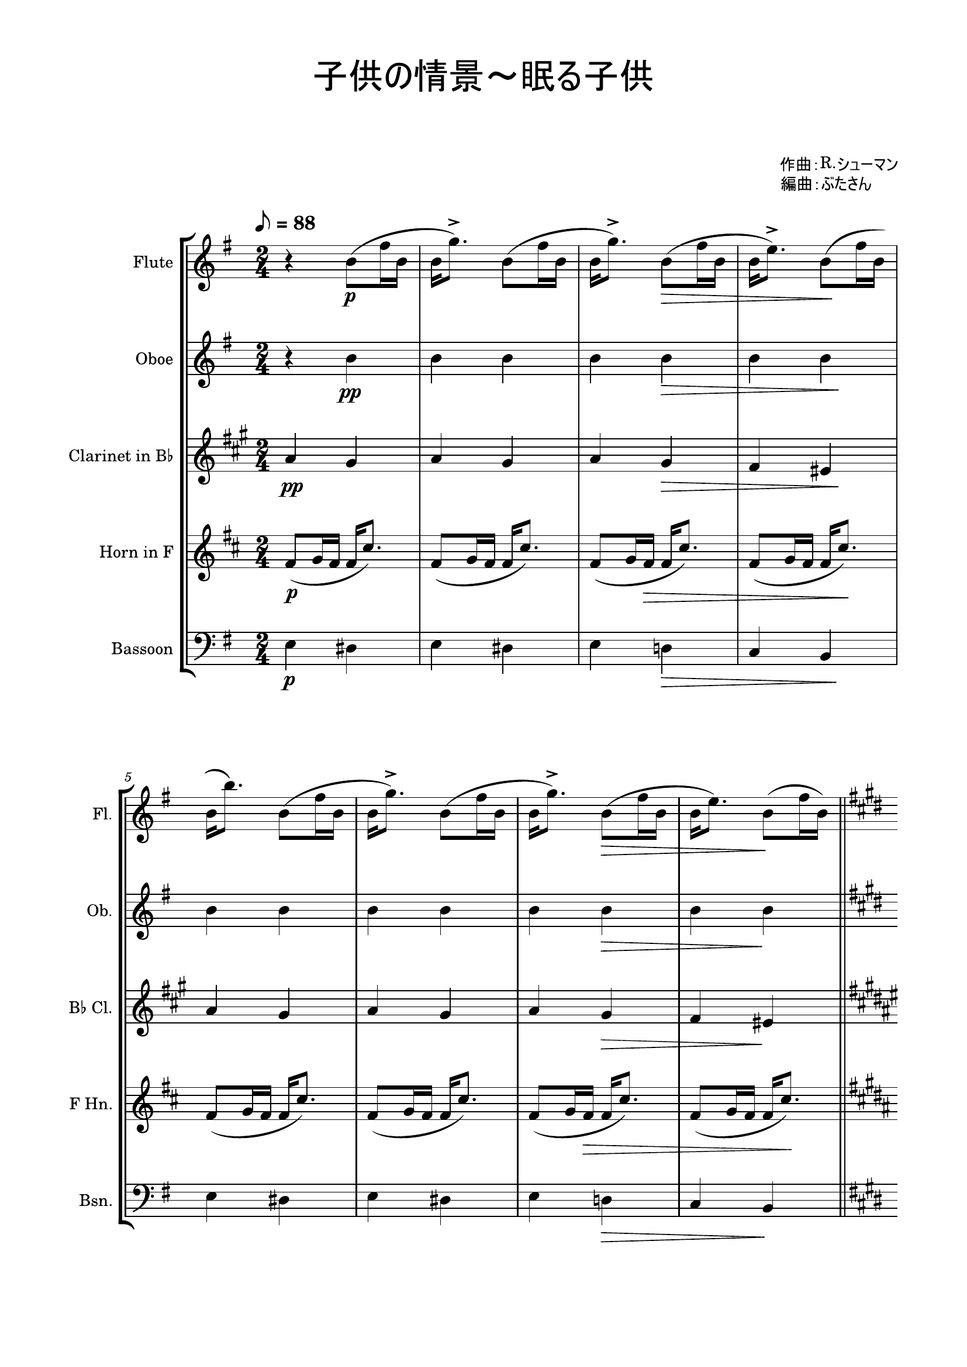 ロベルト・シューマン - 眠る子供～「子供の情景」より (木管五重奏) by ぶたさん